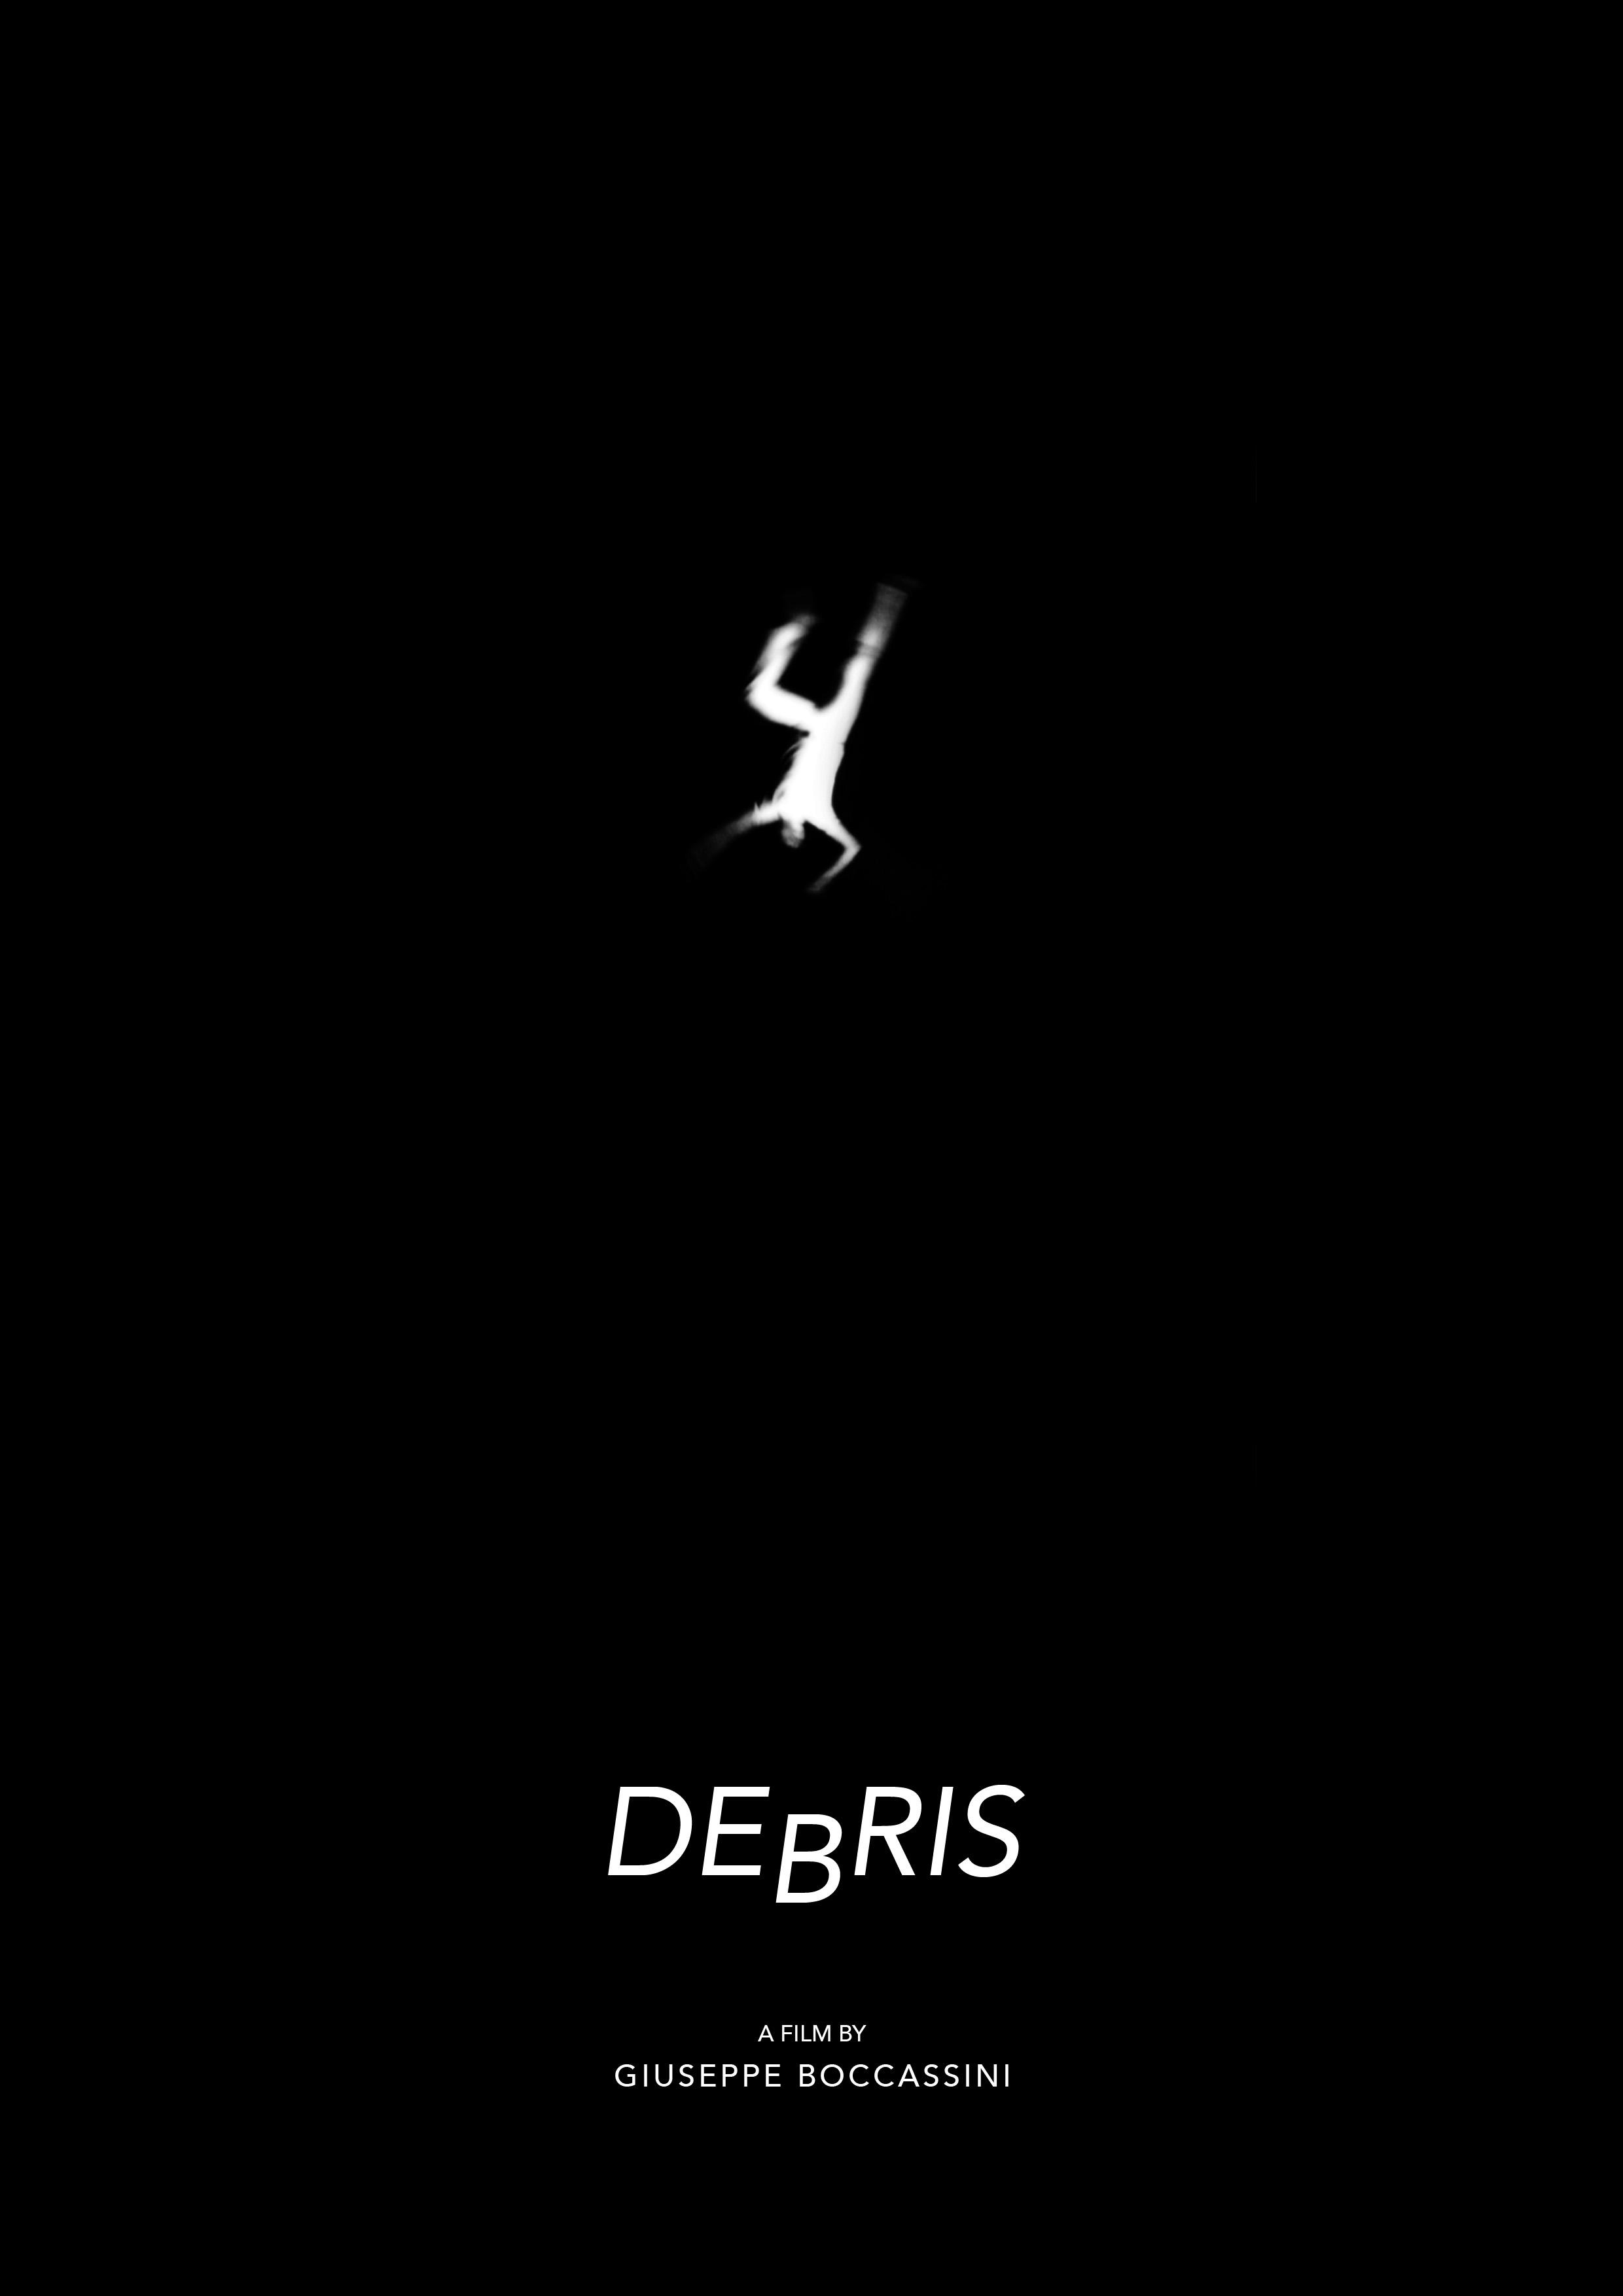 Debris